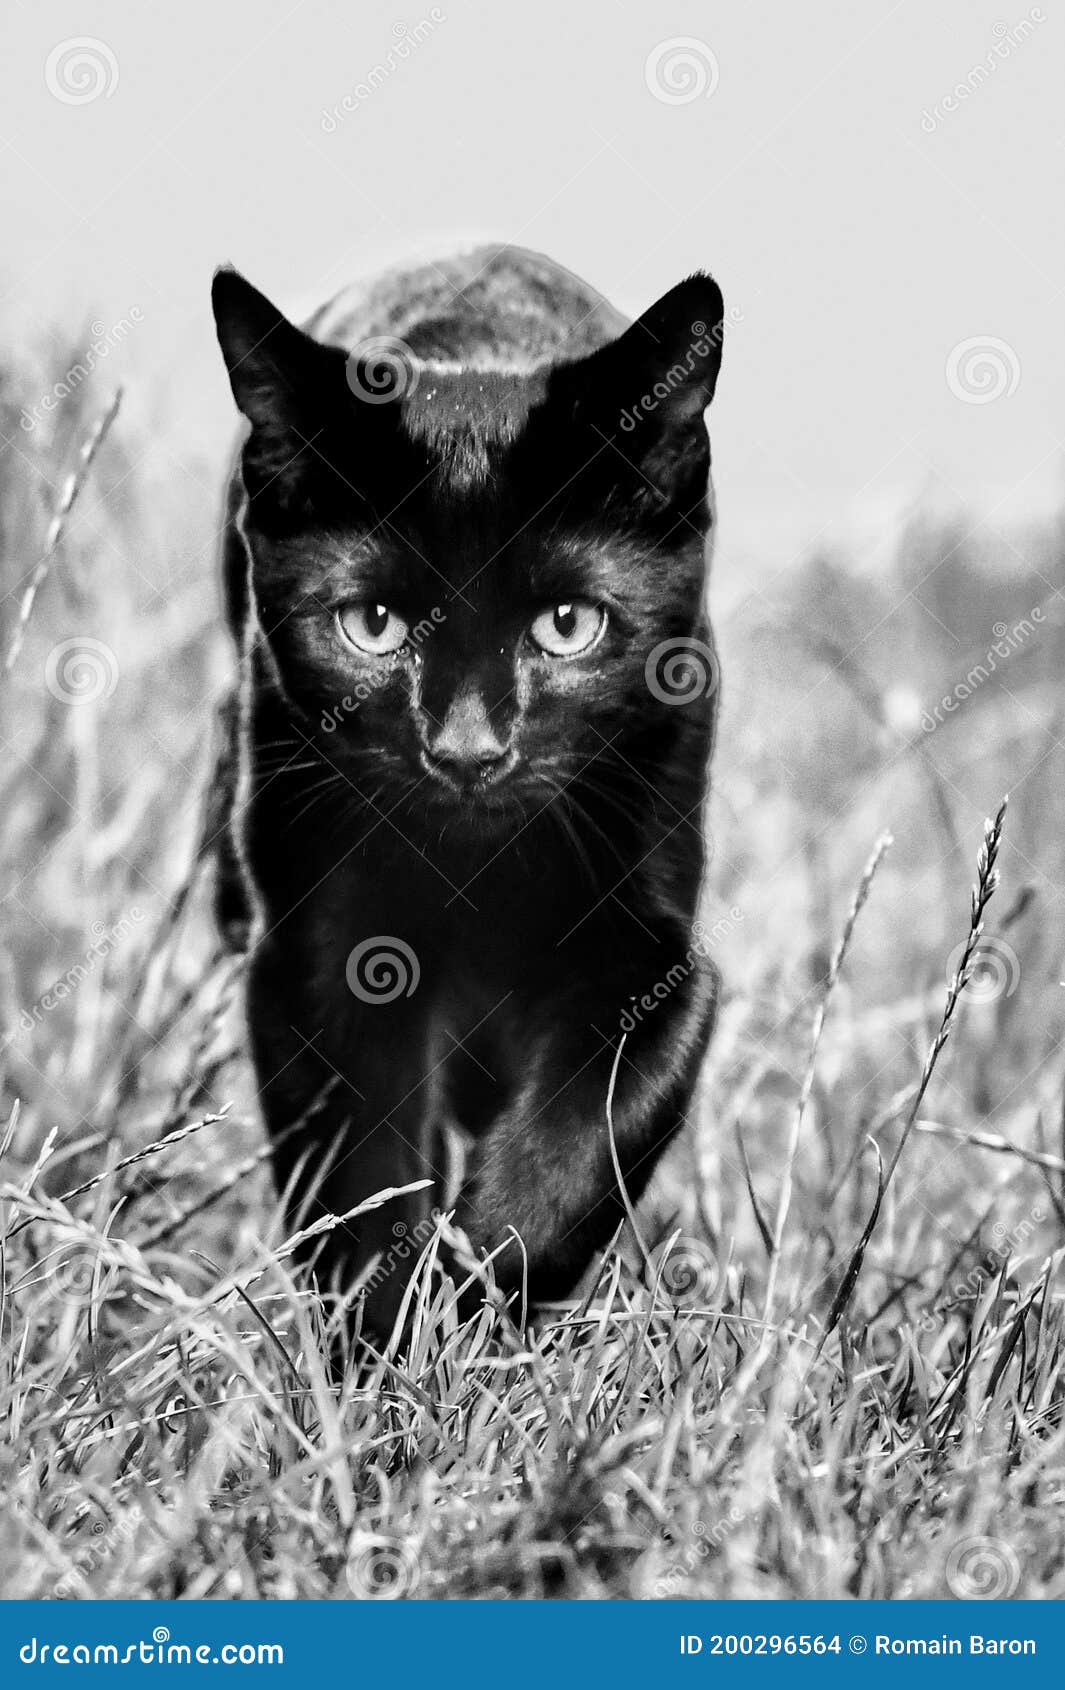 cute black kitten with blue eyes